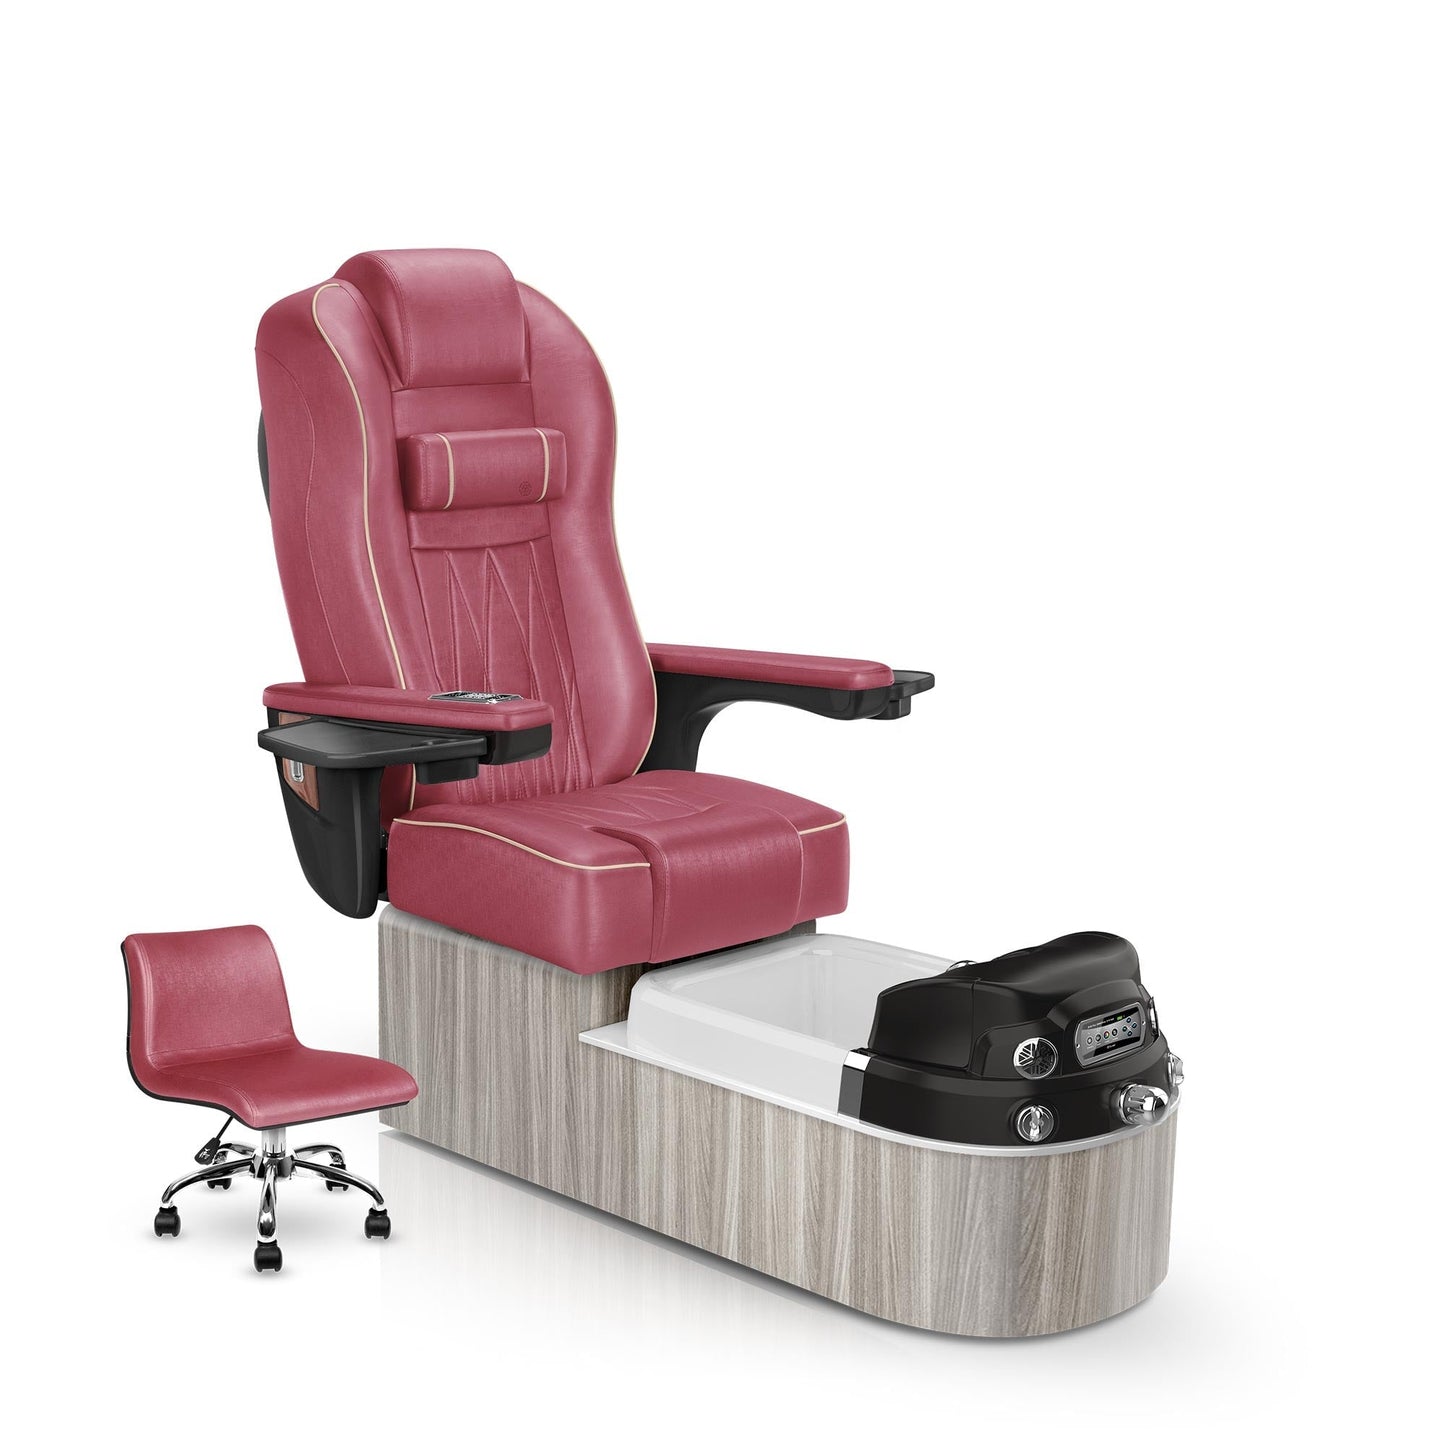 Lexor Envision pedicure chair crimson cushion and hazel base